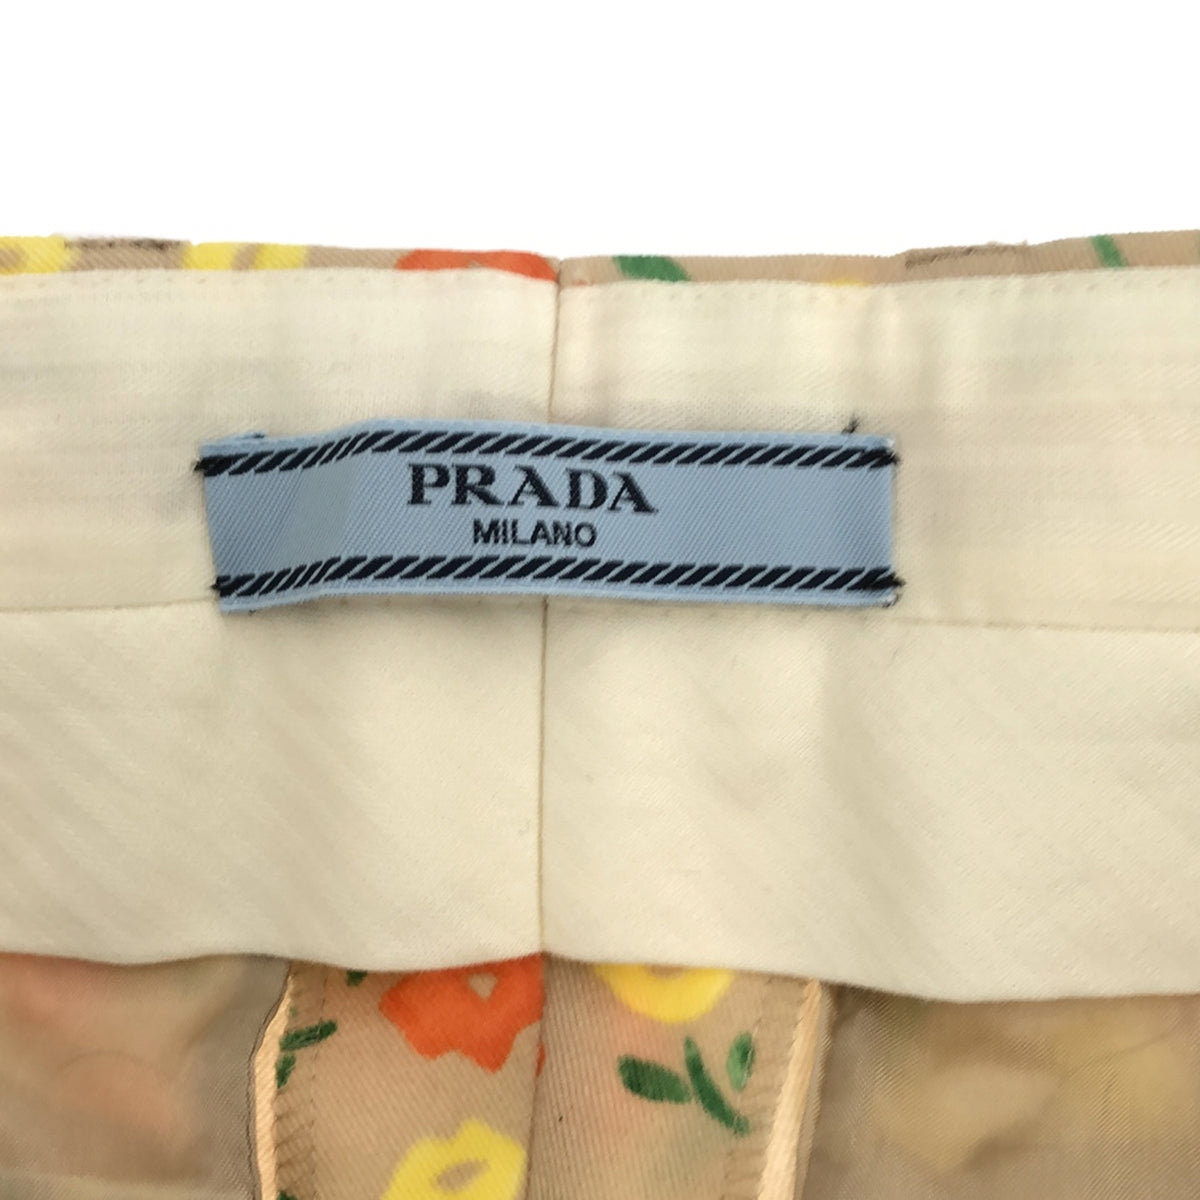 PRADA / プラダ | 総柄 小花 フラワー スラックス パンツ | 36 | レディース